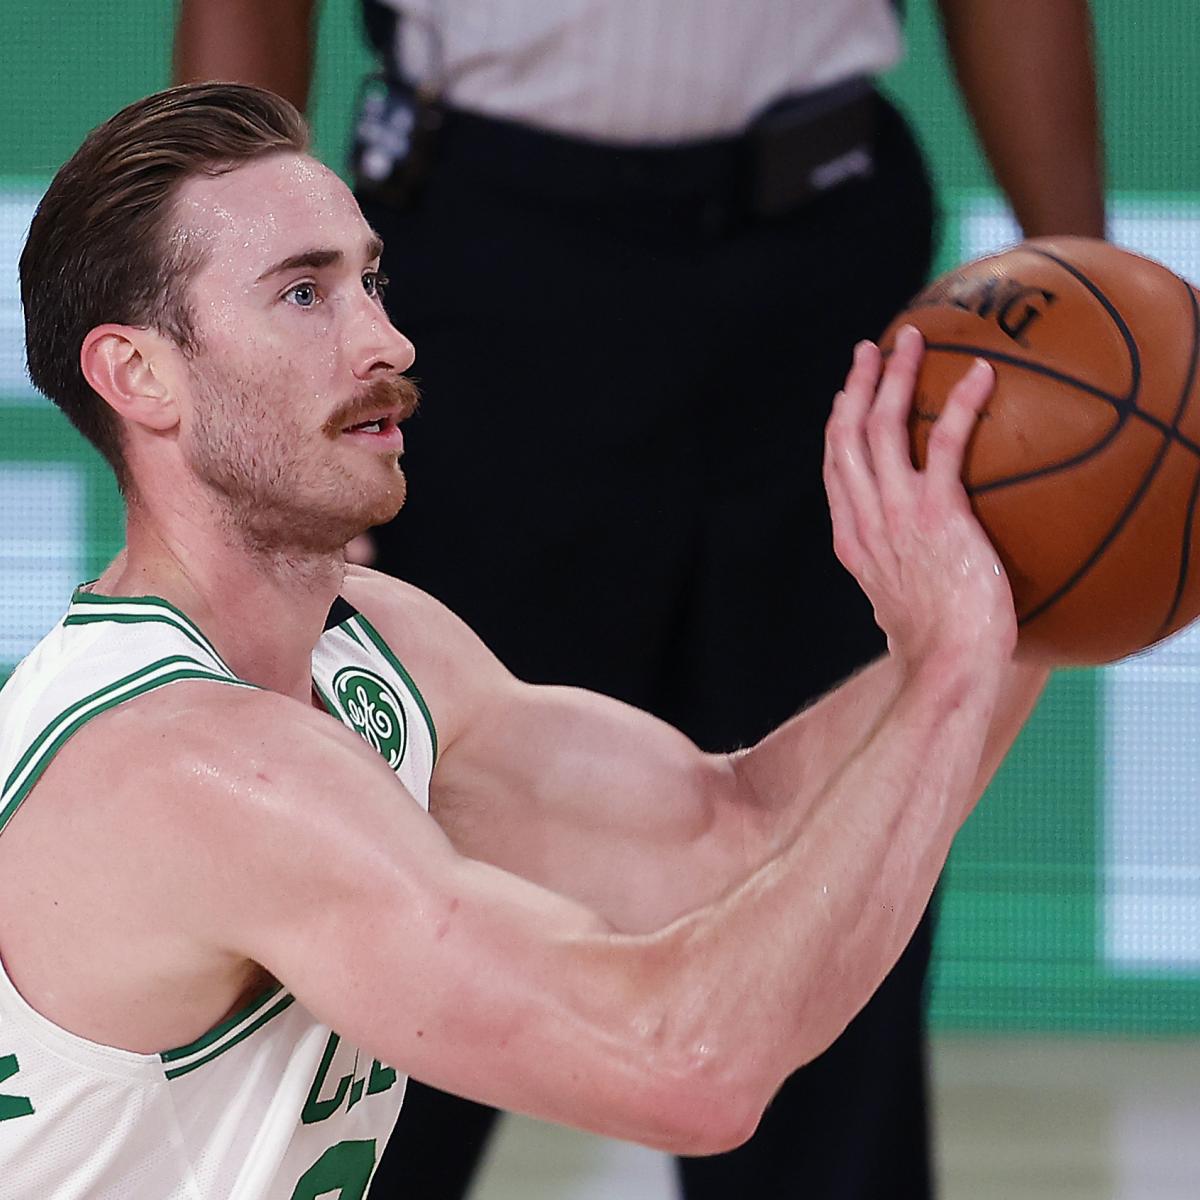 Boston Celtics forward Gordon Hayward rules out return in 2017-18